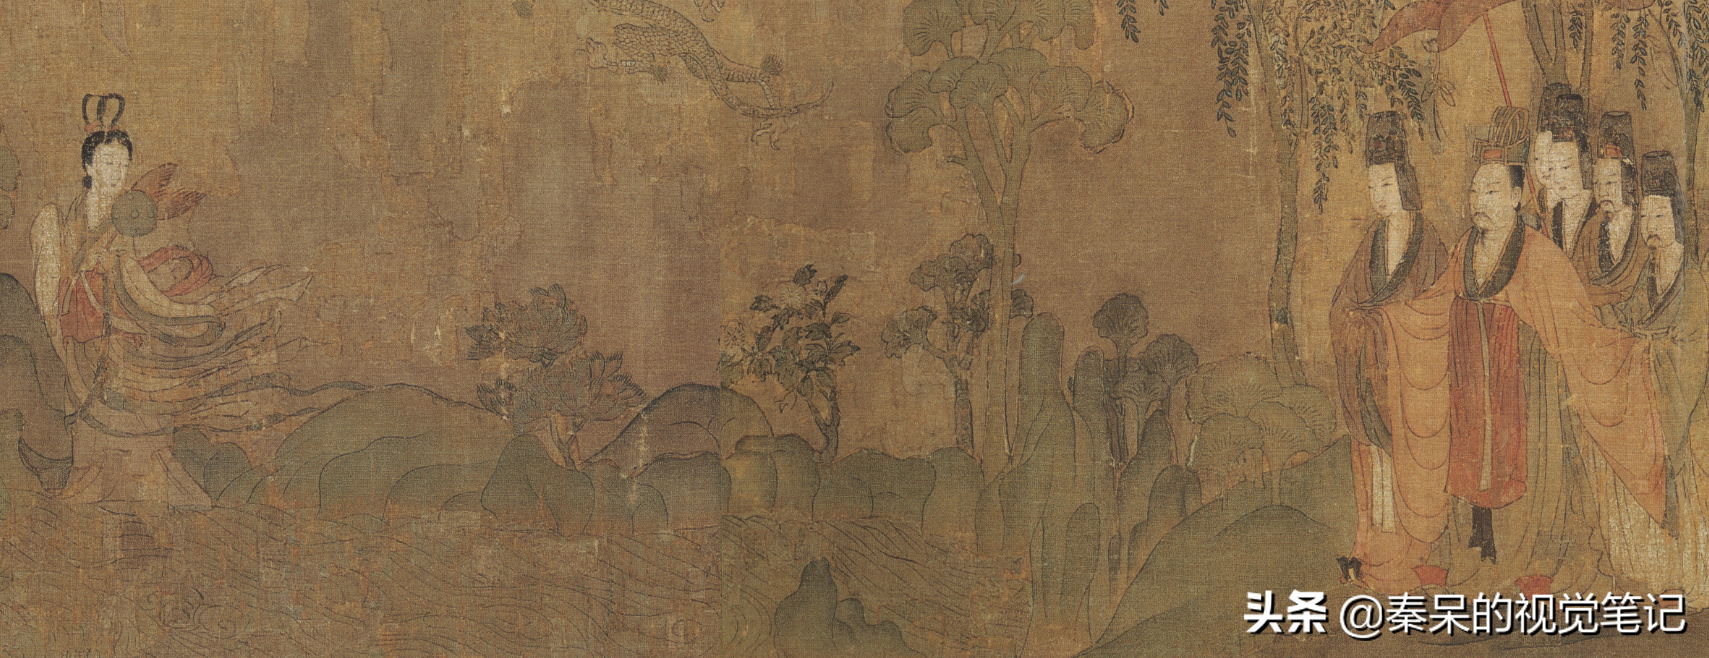 《洛神赋图》详解—情画与情诗，皆成无价的中国国宝